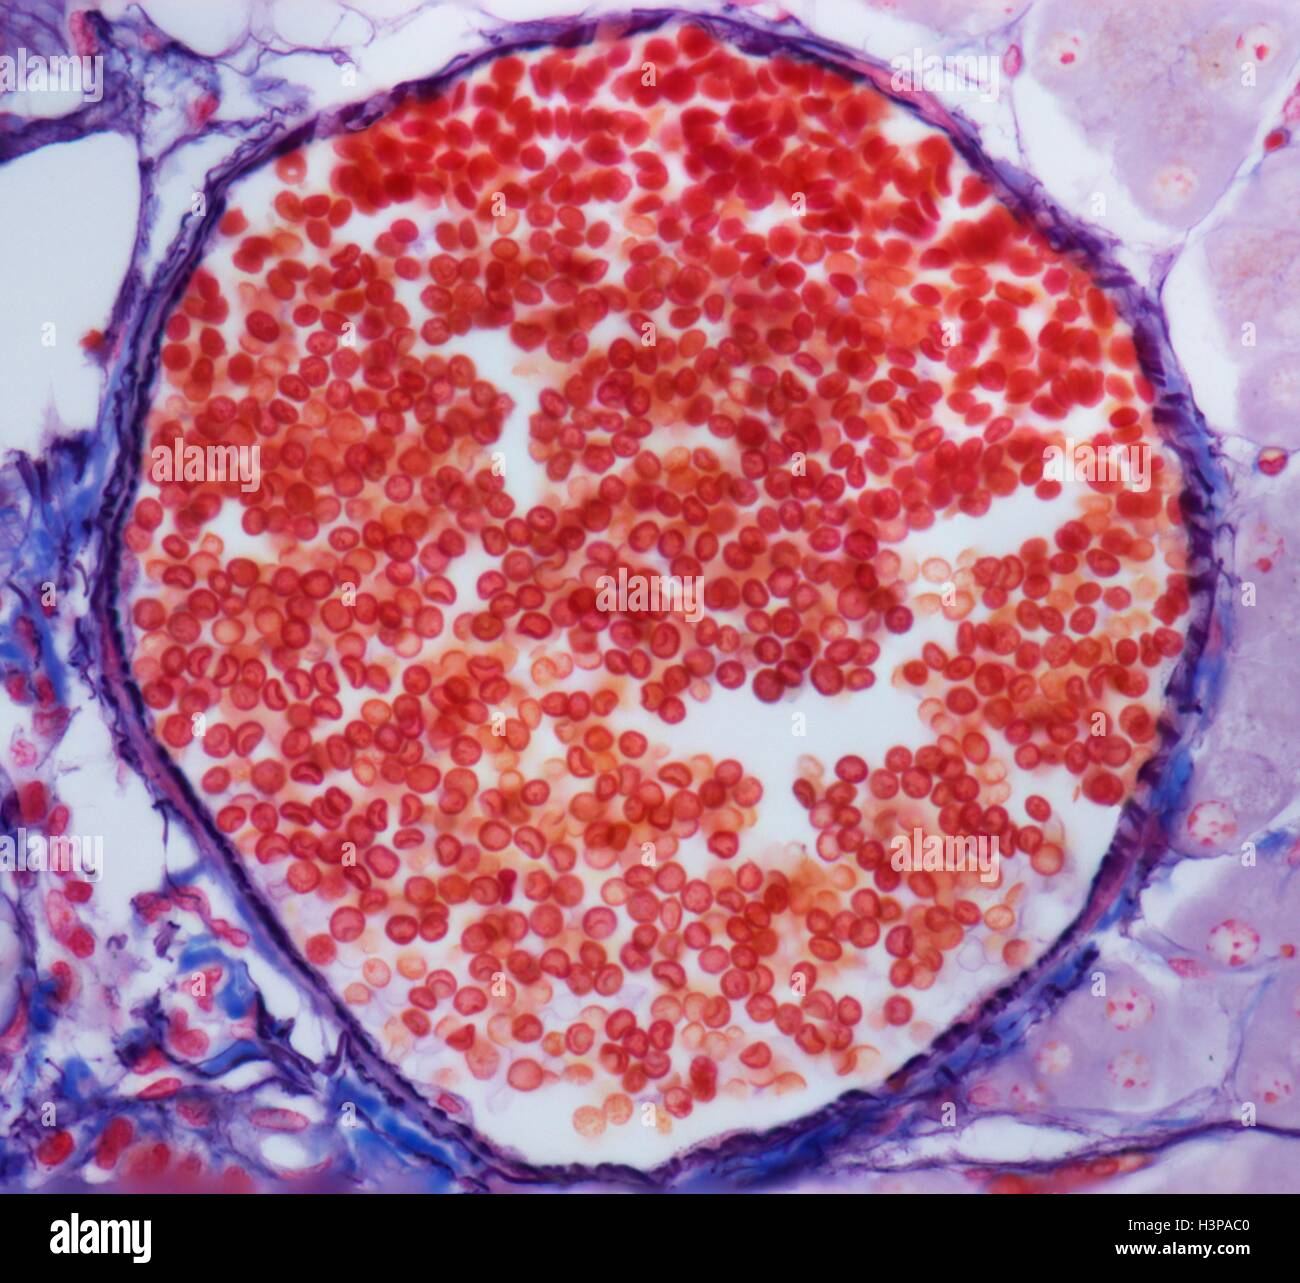 Venula. Micrografia di luce (LM) di globuli rossi (eritrociti, rosso) in una venula. Questi vasi nascono da capillari e sono caratterizzati da un allargamento di diametro e l'acquisizione di fibroblasti e cellule mesenchimali (collettivamente i periciti) che si associano con l'aspetto esterno della venula parete. Ingrandimento: x300 quando stampata a 10 cm di larghezza. Foto Stock